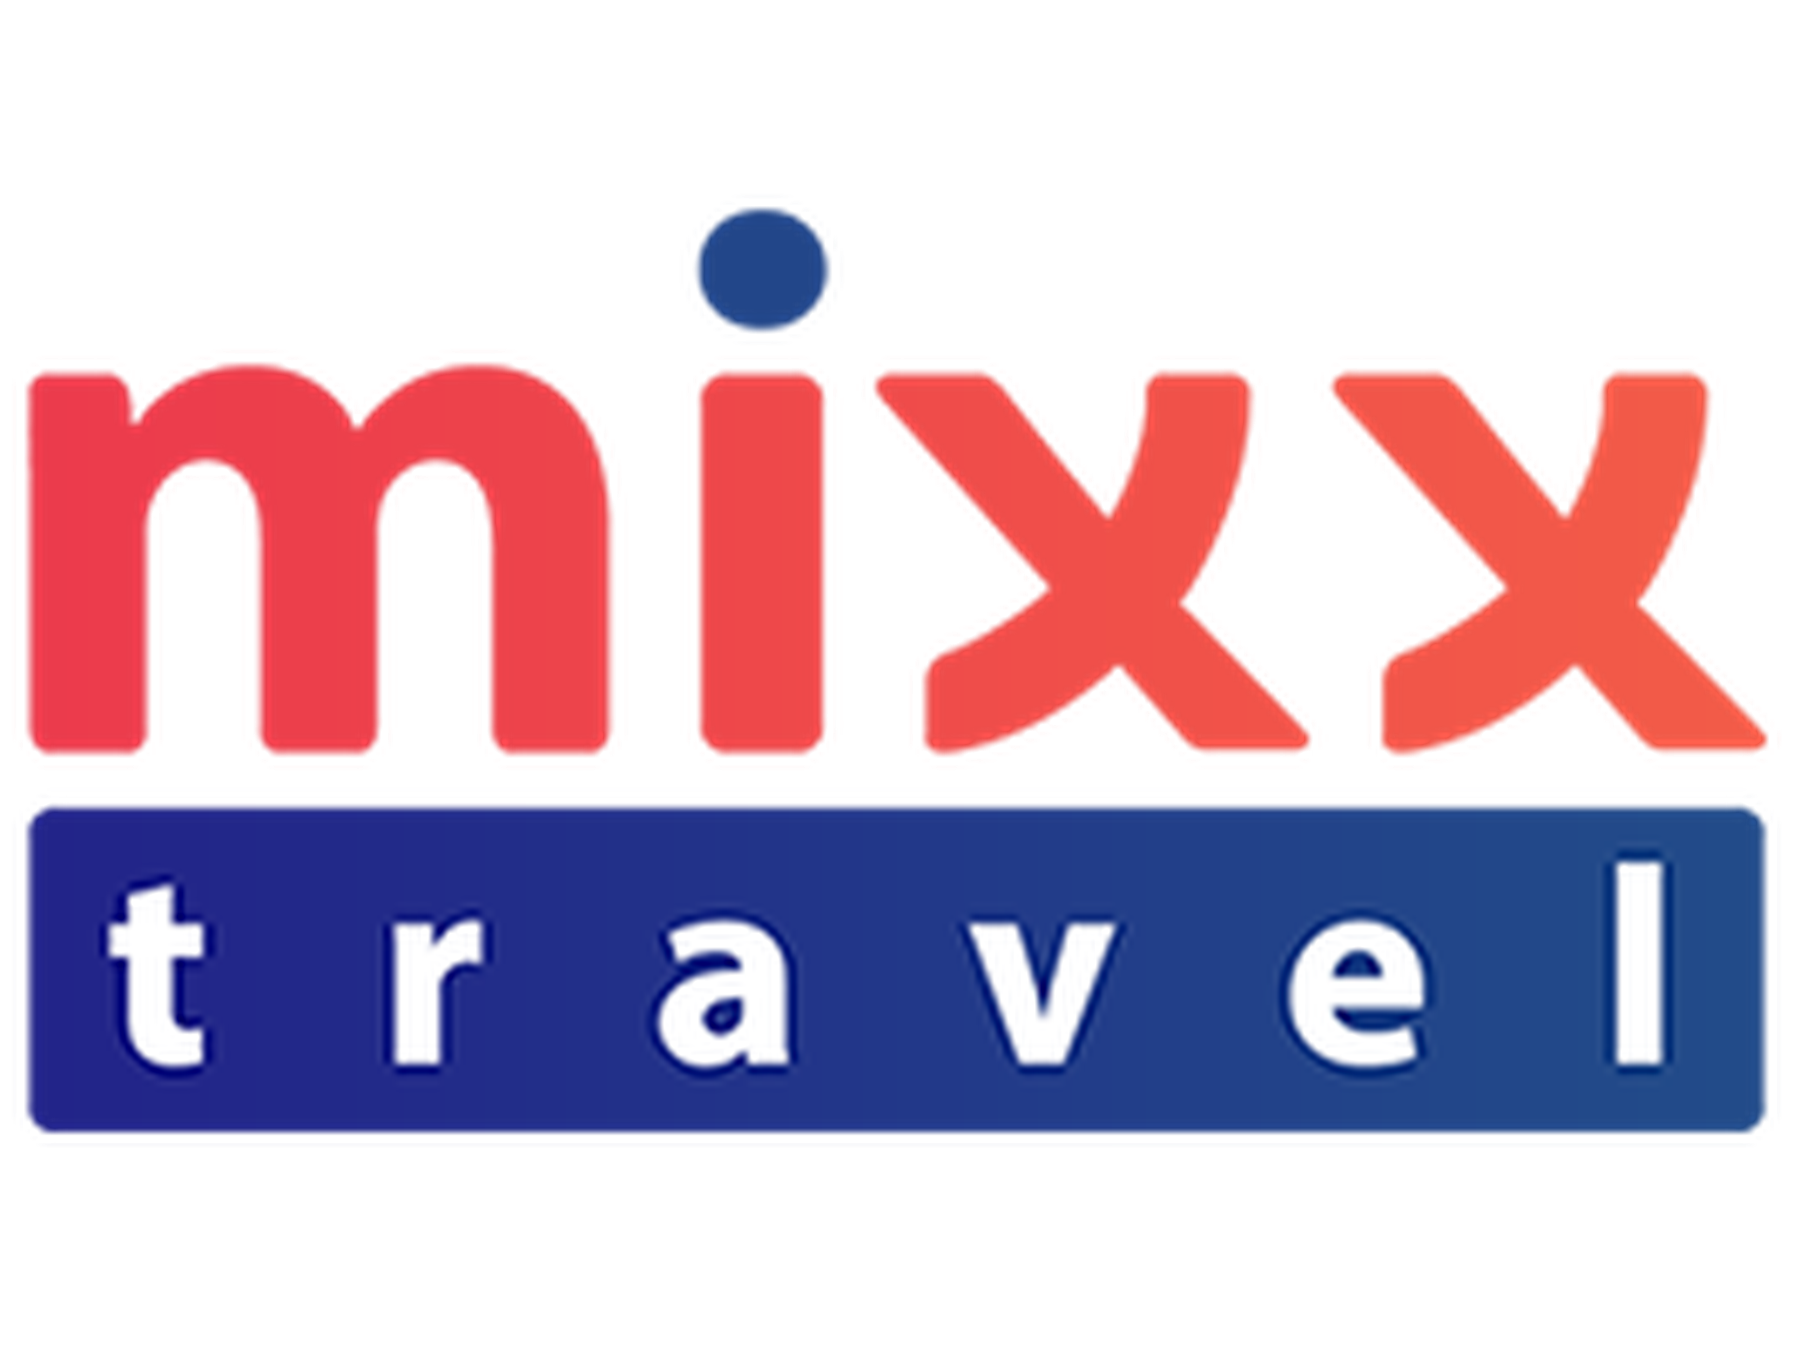 Mixx Travel alennuskoodi